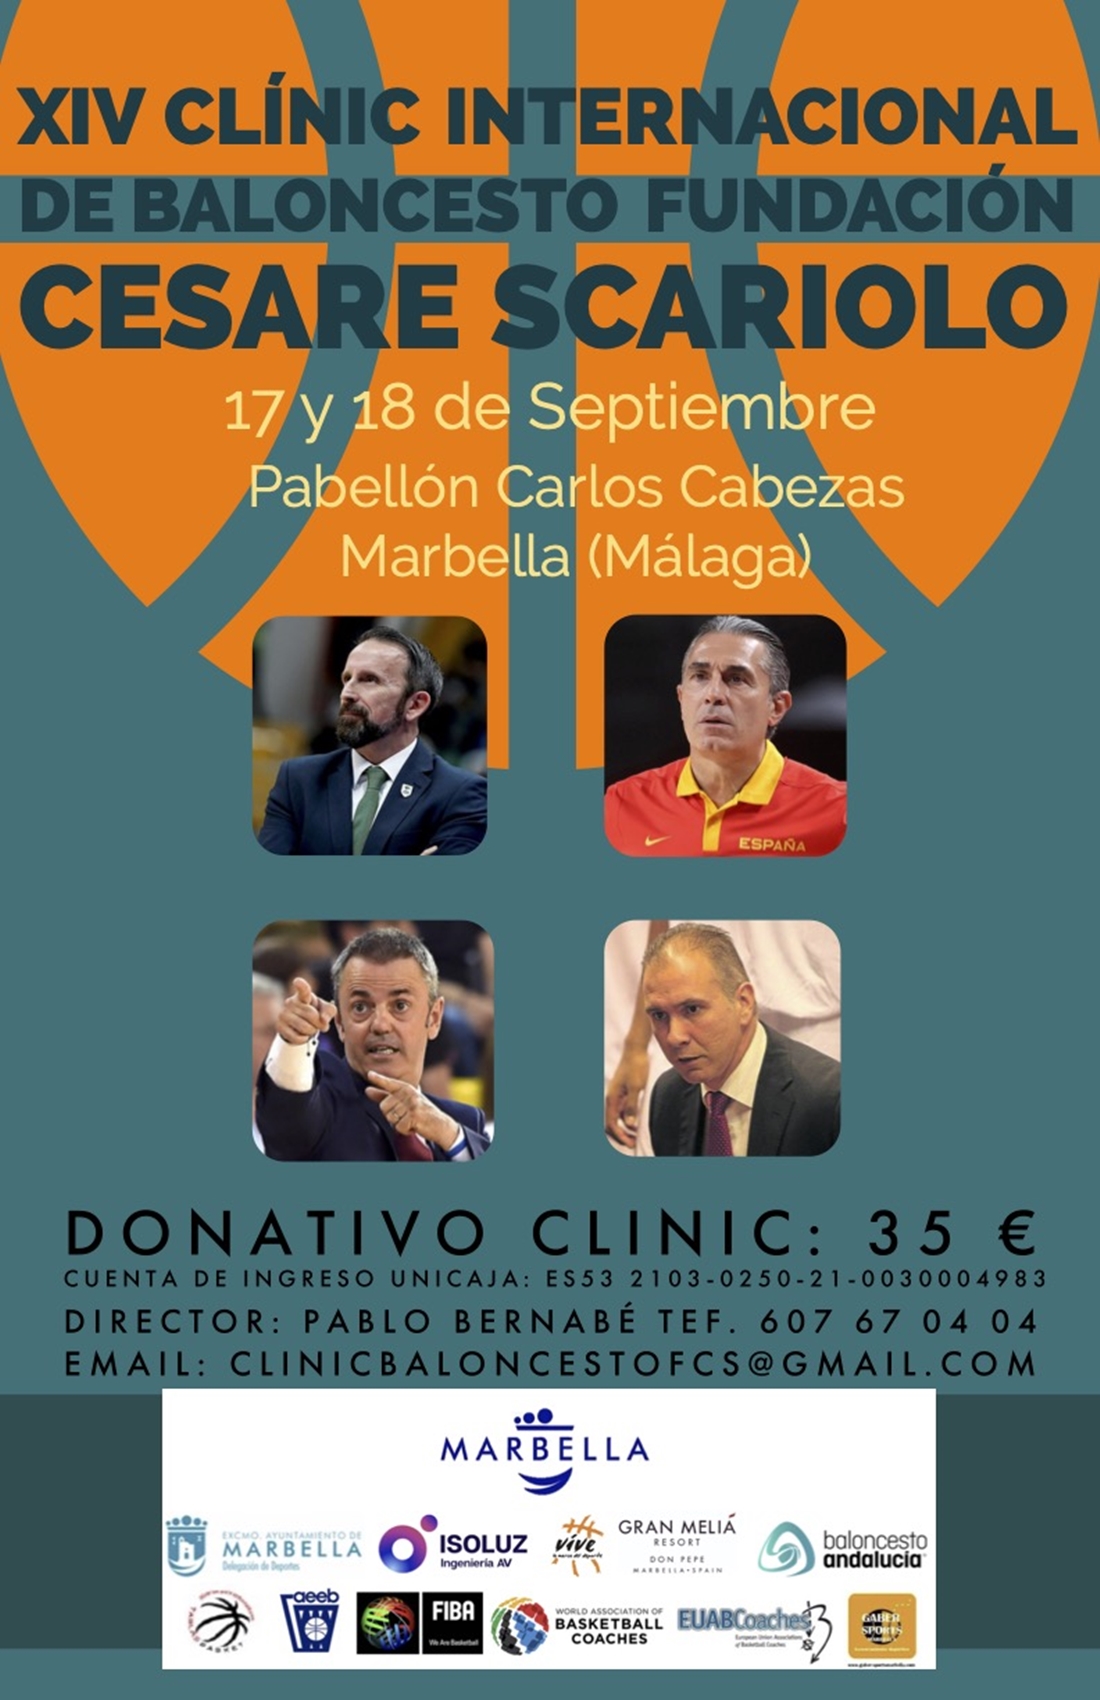 XIV Clínic Internacional de Baloncesto Fundación Cesare Scariolo